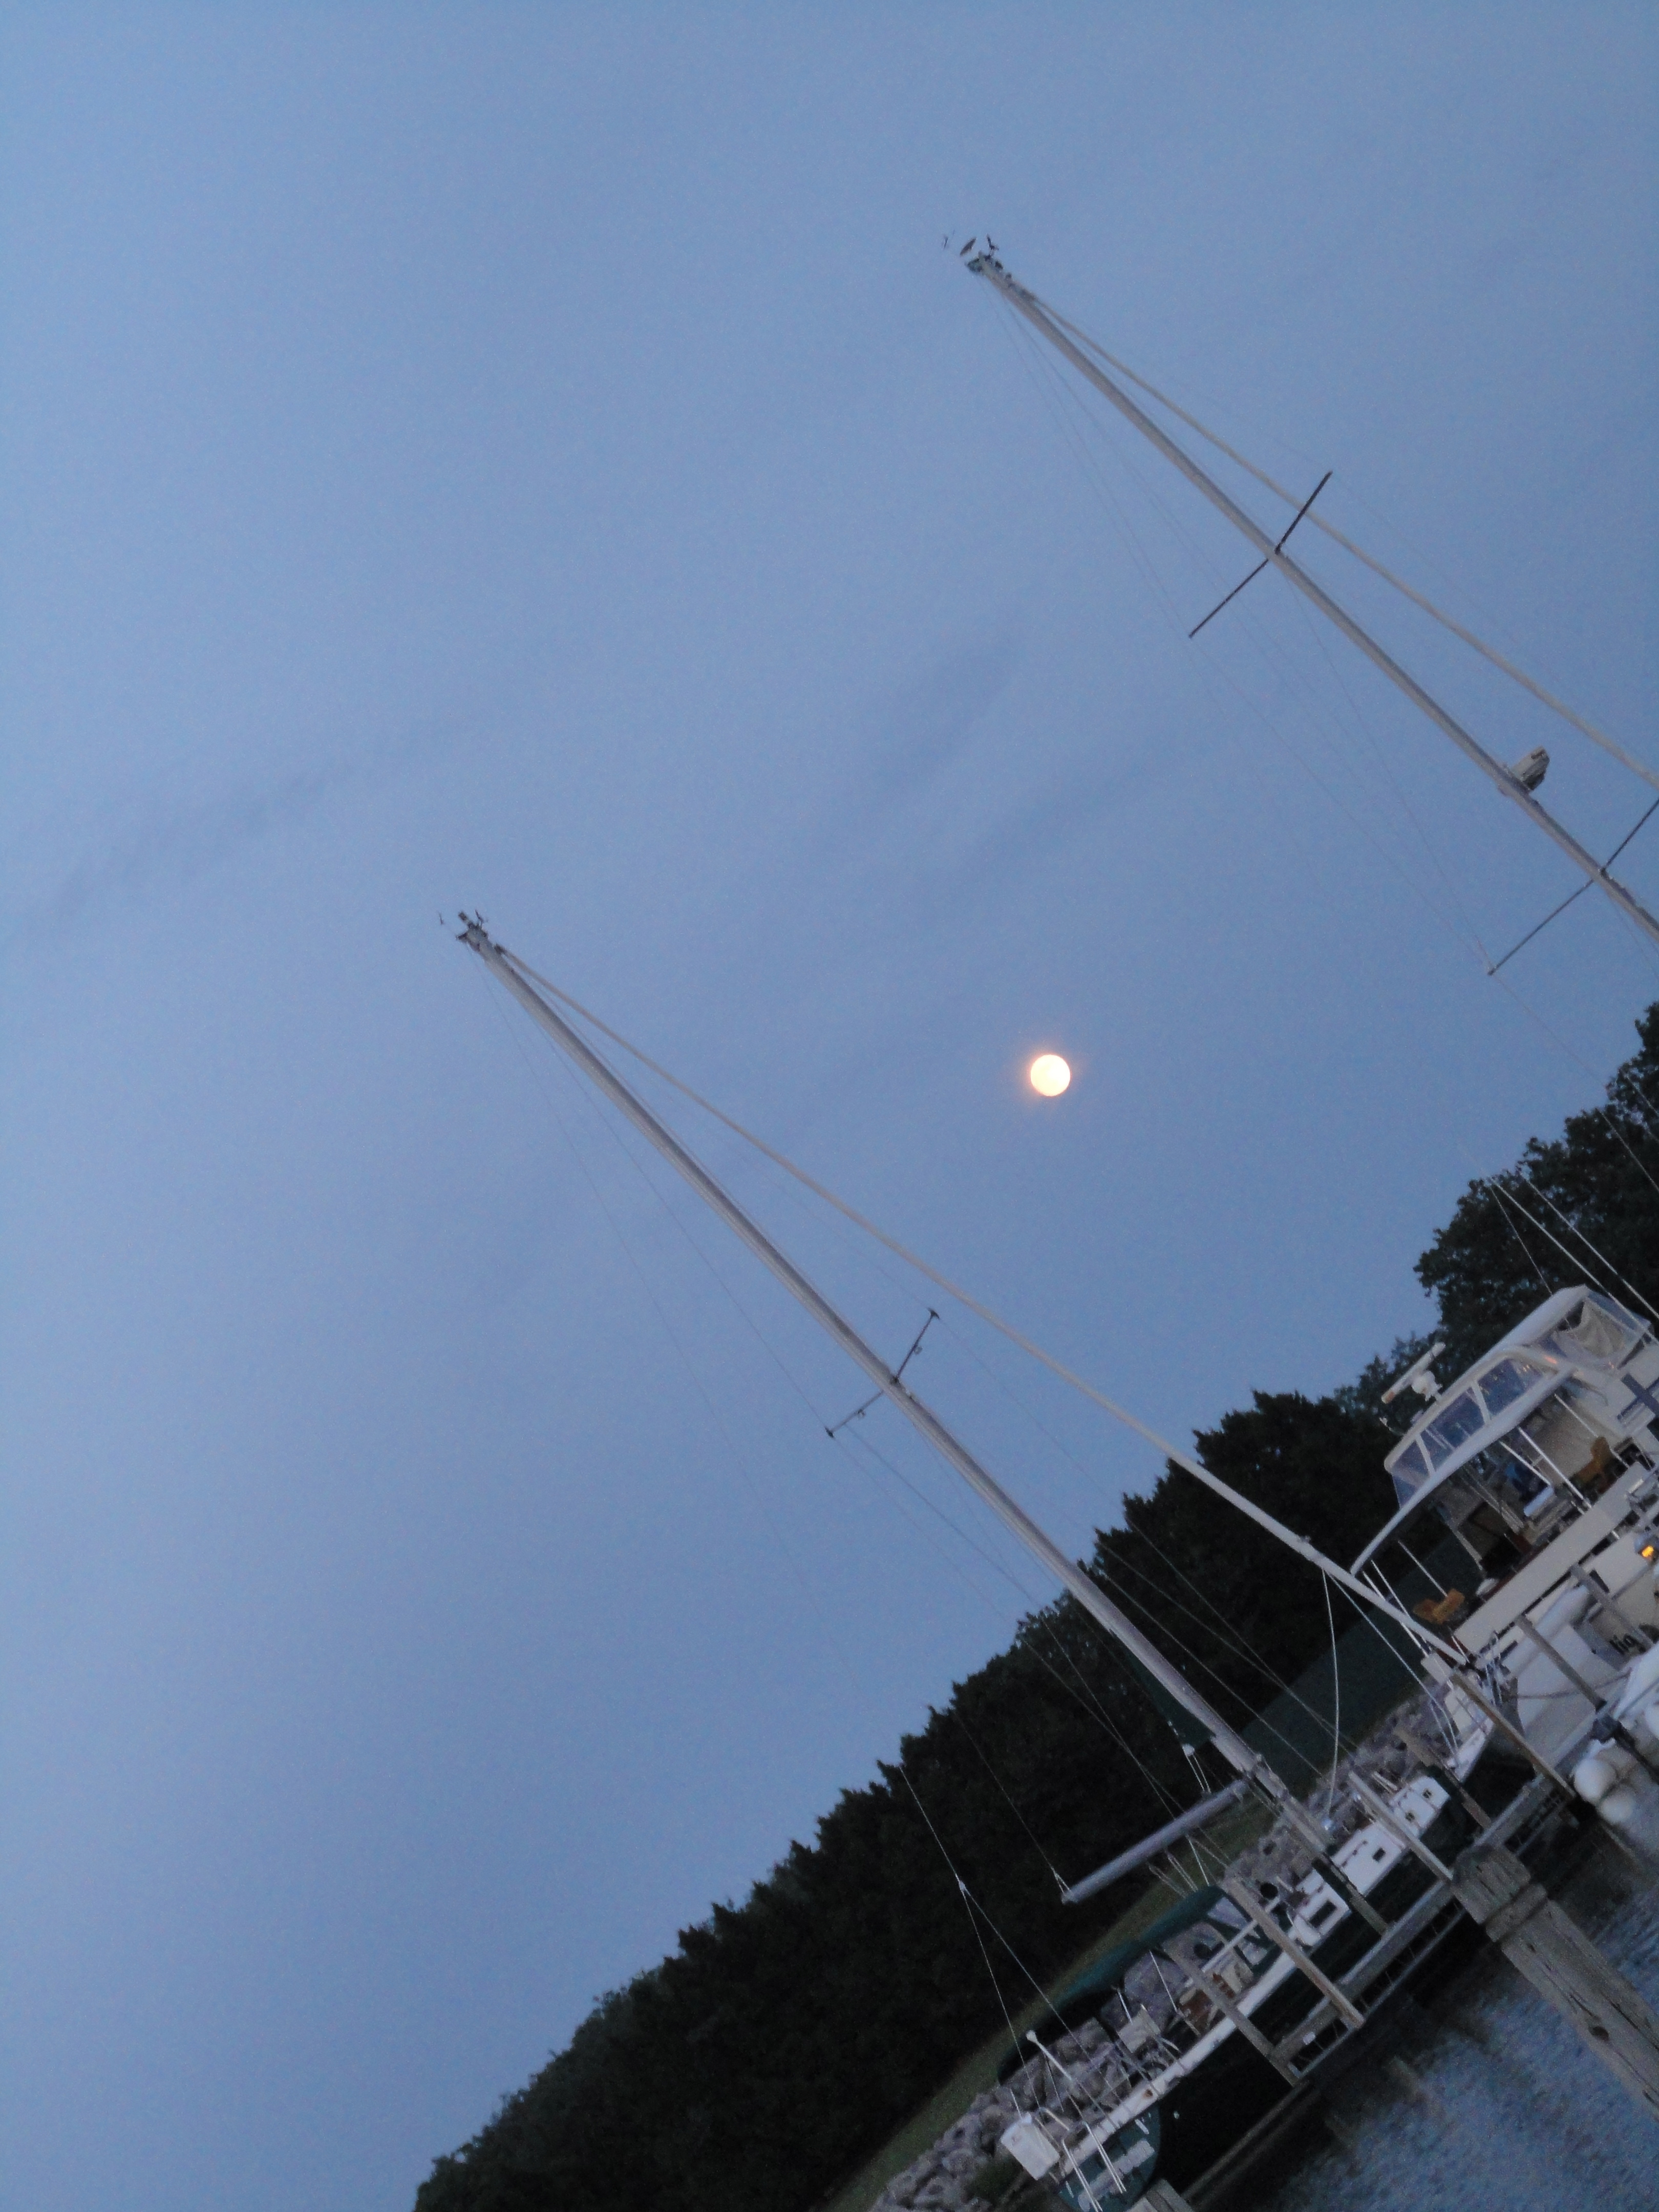 The moon and sailboat masts